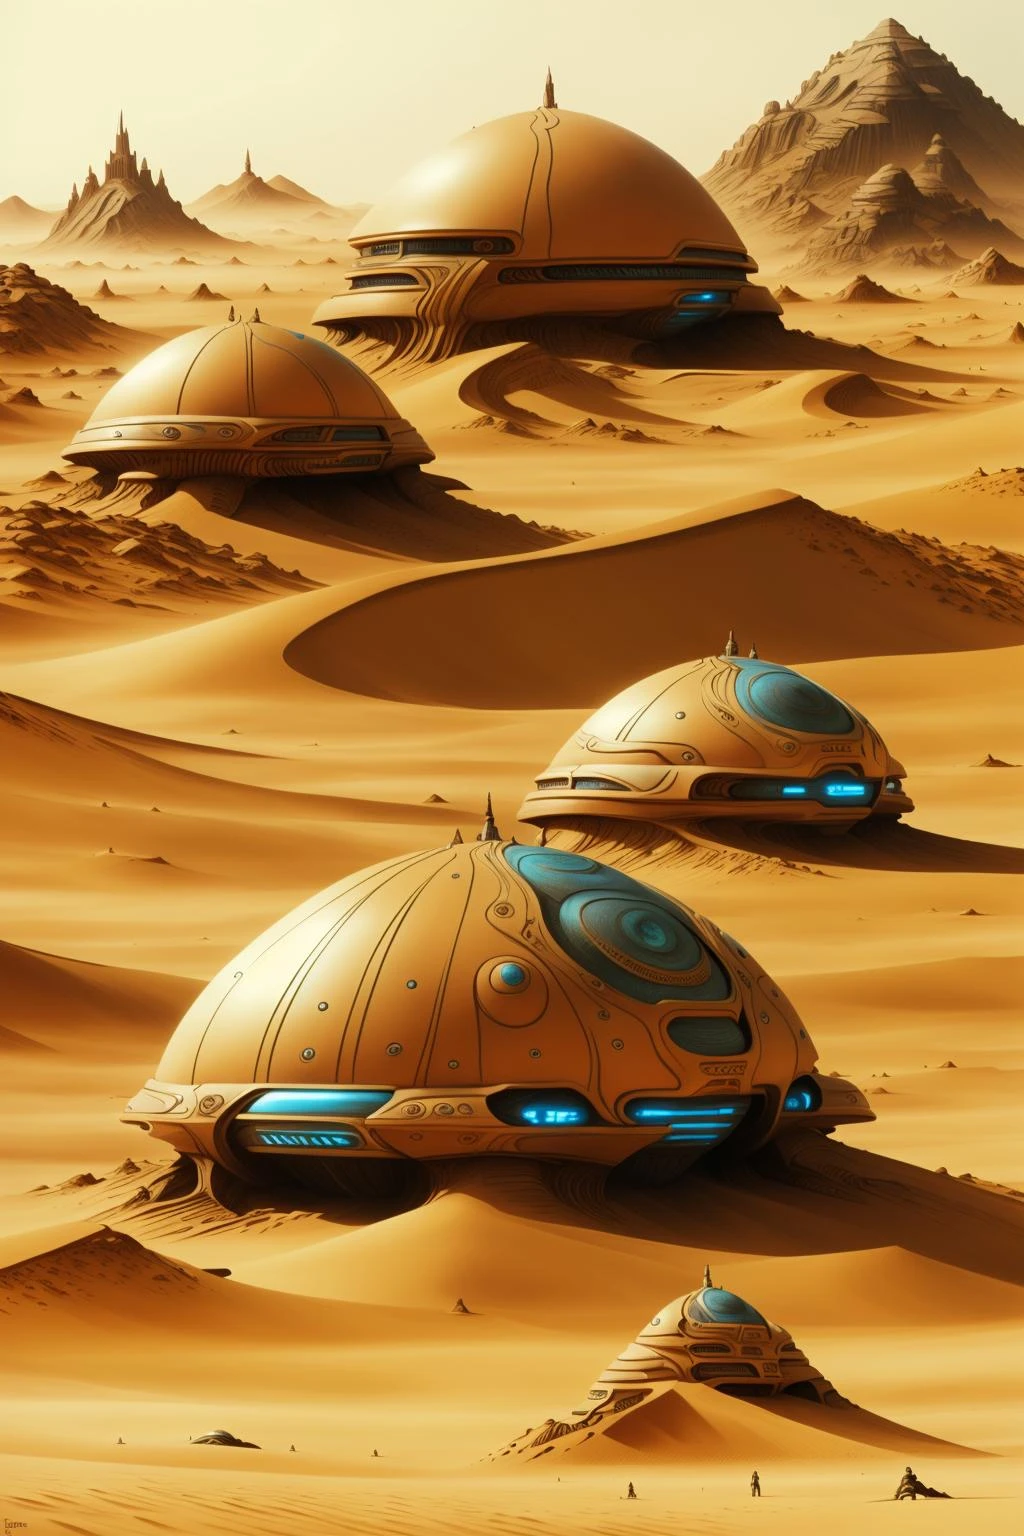 映画「デューン」の登場人物, a futuristic city in the 砂漠 with a giant dome , 屋外, 複数の男の子, 景色, 山, 砂, 宇宙船, 砂漠 , サイエンスフィクション, 野原の真ん中に置かれたいくつかの岩